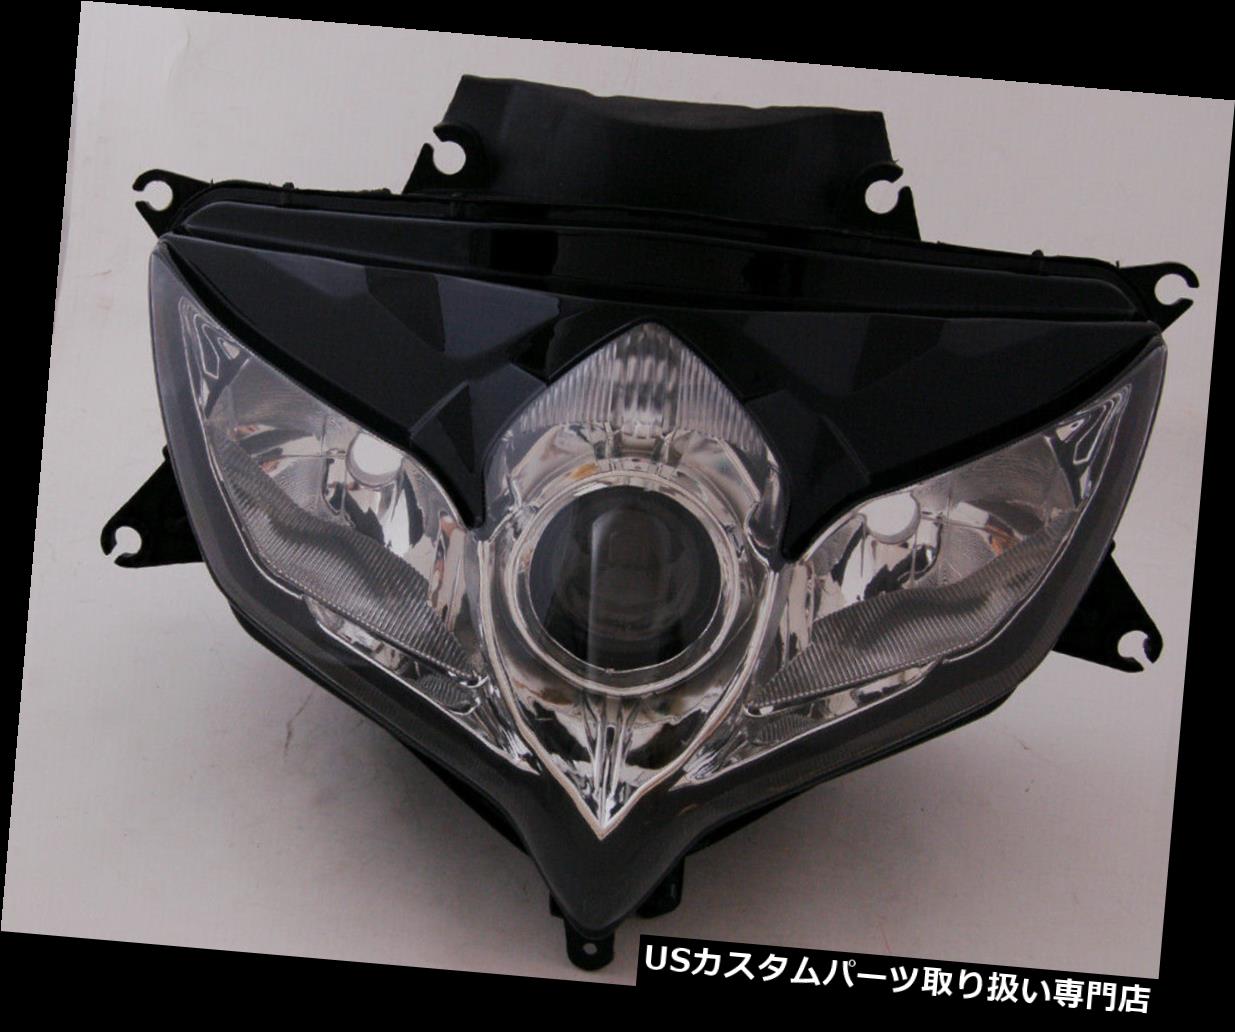 Front Headlight Headlamp Assembly For Suzuki GSXR 600/750 2008-2010 K8 A005カテゴリUSヘッドライト状態新品メーカー車種発送詳細送料一律 1000円（※北海道、沖縄、離島は省く）商品詳細輸入商品の為、英語表記となります。 Condition: New Brand: Areyourshop Money back or item exchange: Yes, within 60 days after receiving item MPN: M513-A029-Clear Warranty: 180 days Manufacturer Part Number: M513-A029-Clear UPC: Does not apply※以下の注意事項をご理解頂いた上で、ご入札下さい※■海外輸入品の為、NC,NRでお願い致します。■フィッテングや車検対応の有無については、基本的に画像と説明文よりお客様の方にてご判断をお願いしております。■USパーツは国内の純正パーツを取り外した後、接続コネクタが必ずしも一致するとは限らず、加工が必要な場合もございます。■輸入品につき、商品に小傷やスレなどがある場合がございます。■大型商品に関しましては、配送会社の規定により個人宅への配送が困難な場合がございます。その場合は、会社や倉庫、最寄りの営業所での受け取りをお願いする場合がございます。■大型商品に関しましては、輸入消費税が課税される場合もございます。その場合はお客様側で輸入業者へ輸入消費税のお支払いのご負担をお願いする場合がございます。■取付並びにサポートは行なっておりません。また作業時間や難易度は個々の技量に左右されますのでお答え出来かねます。■取扱い説明書などは基本的に同封されておりません。■商品説明文中に英語にて”保障”に関する記載があっても適応はされませんので、ご理解ください。■商品の発送前に事前に念入りな検品を行っておりますが、運送状況による破損等がある場合がございますので、商品到着次第、速やかに商品の確認をお願いします。■到着より7日以内のみ保証対象とします。ただし、取り付け後は、保証対象外となります。■商品の配送方法や日時の指定頂けません。■お届けまでには、2〜3週間程頂いております。ただし、通関処理や天候次第で多少遅れが発生する場合もあります。■商品落札後のお客様のご都合によるキャンセルはお断りしておりますが、落札金額の30％の手数料をいただいた場合のみお受けする場合があります。■他にもUSパーツを多数出品させて頂いておりますので、ご覧頂けたらと思います。■USパーツの輸入代行も行っておりますので、ショップに掲載されていない商品でもお探しする事が可能です!!お気軽にお問い合わせ下さい。&nbsp;